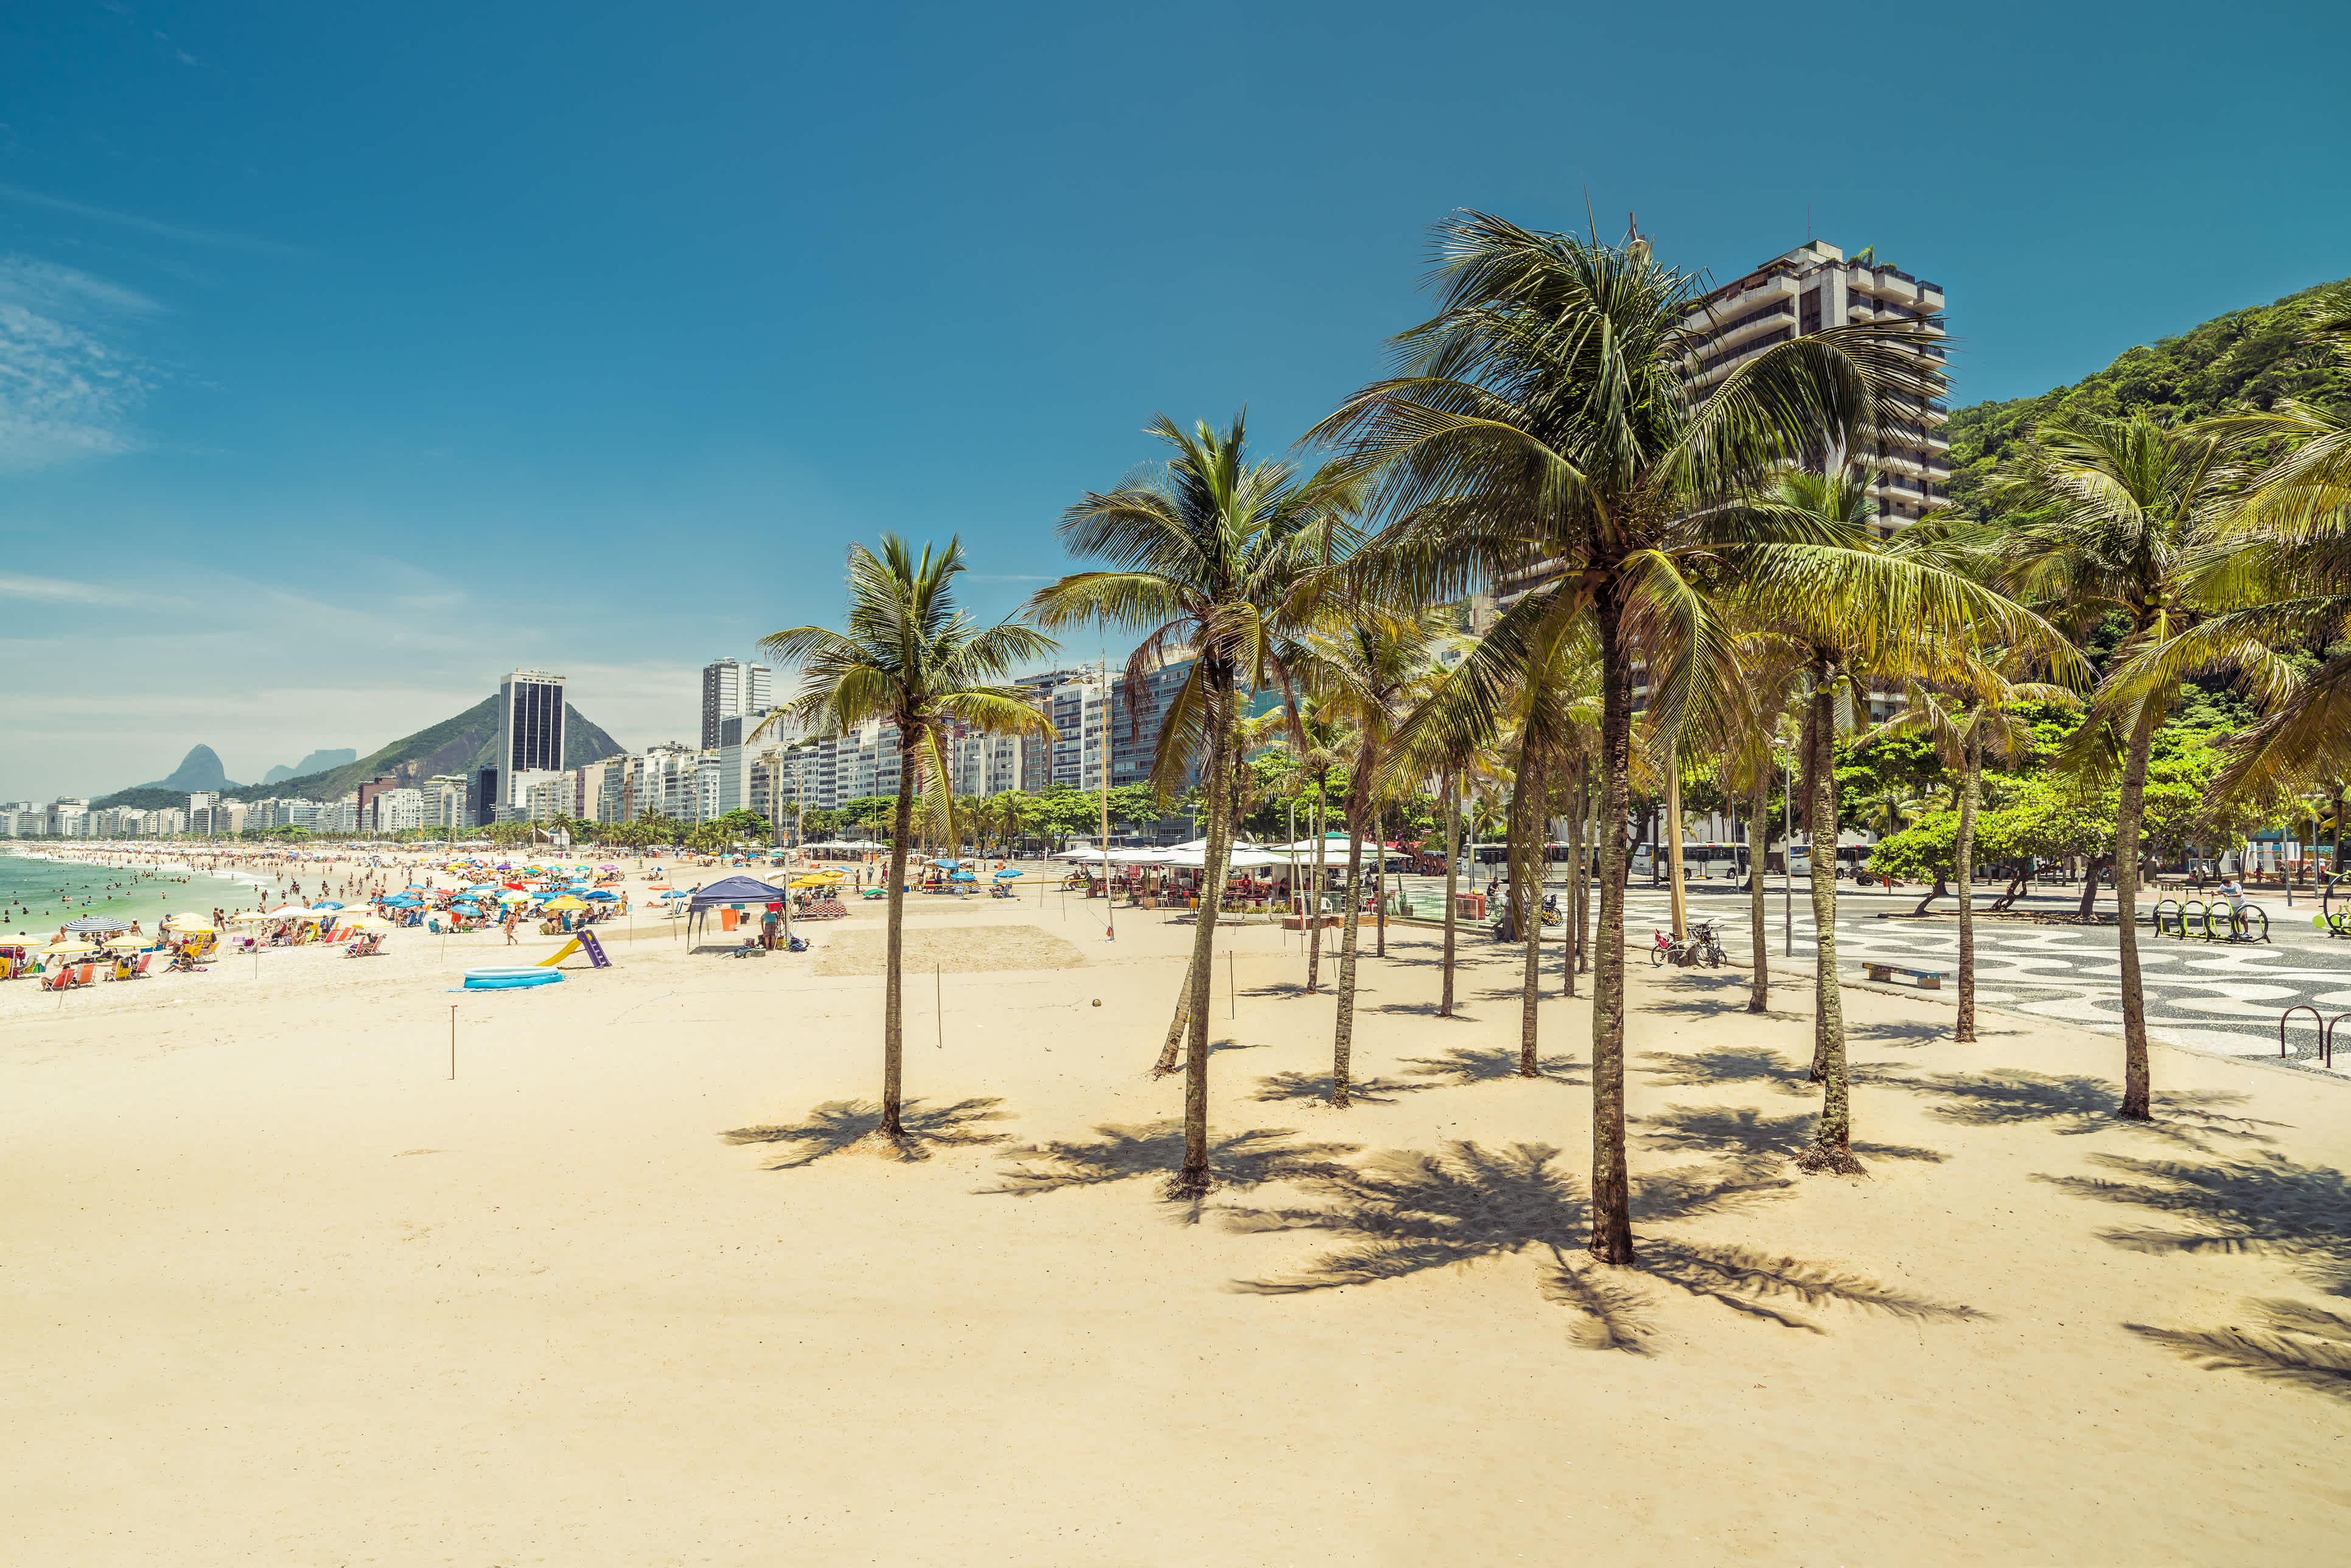 Découvrez les plages exotiques de Copacabana pendant votre voyage au Brésil.